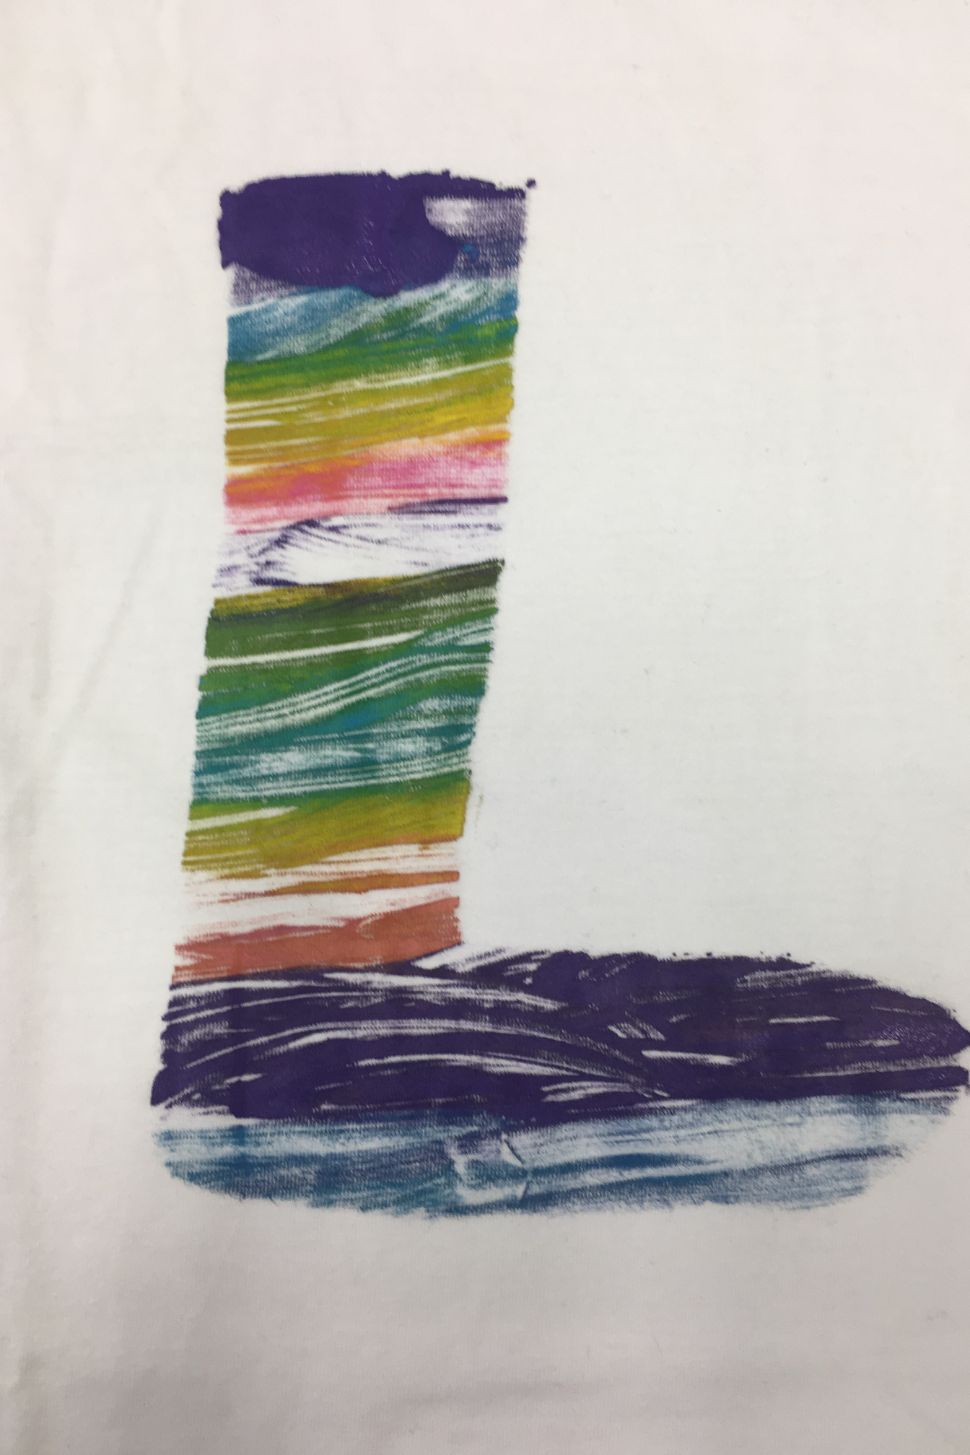 online workshop ponožka pruhovaná na textil malování na textil webinář 5 výtvarných technik a 10 tipů jak malovat nejen na triko s lektorkou arteterapie radkou rubešovou